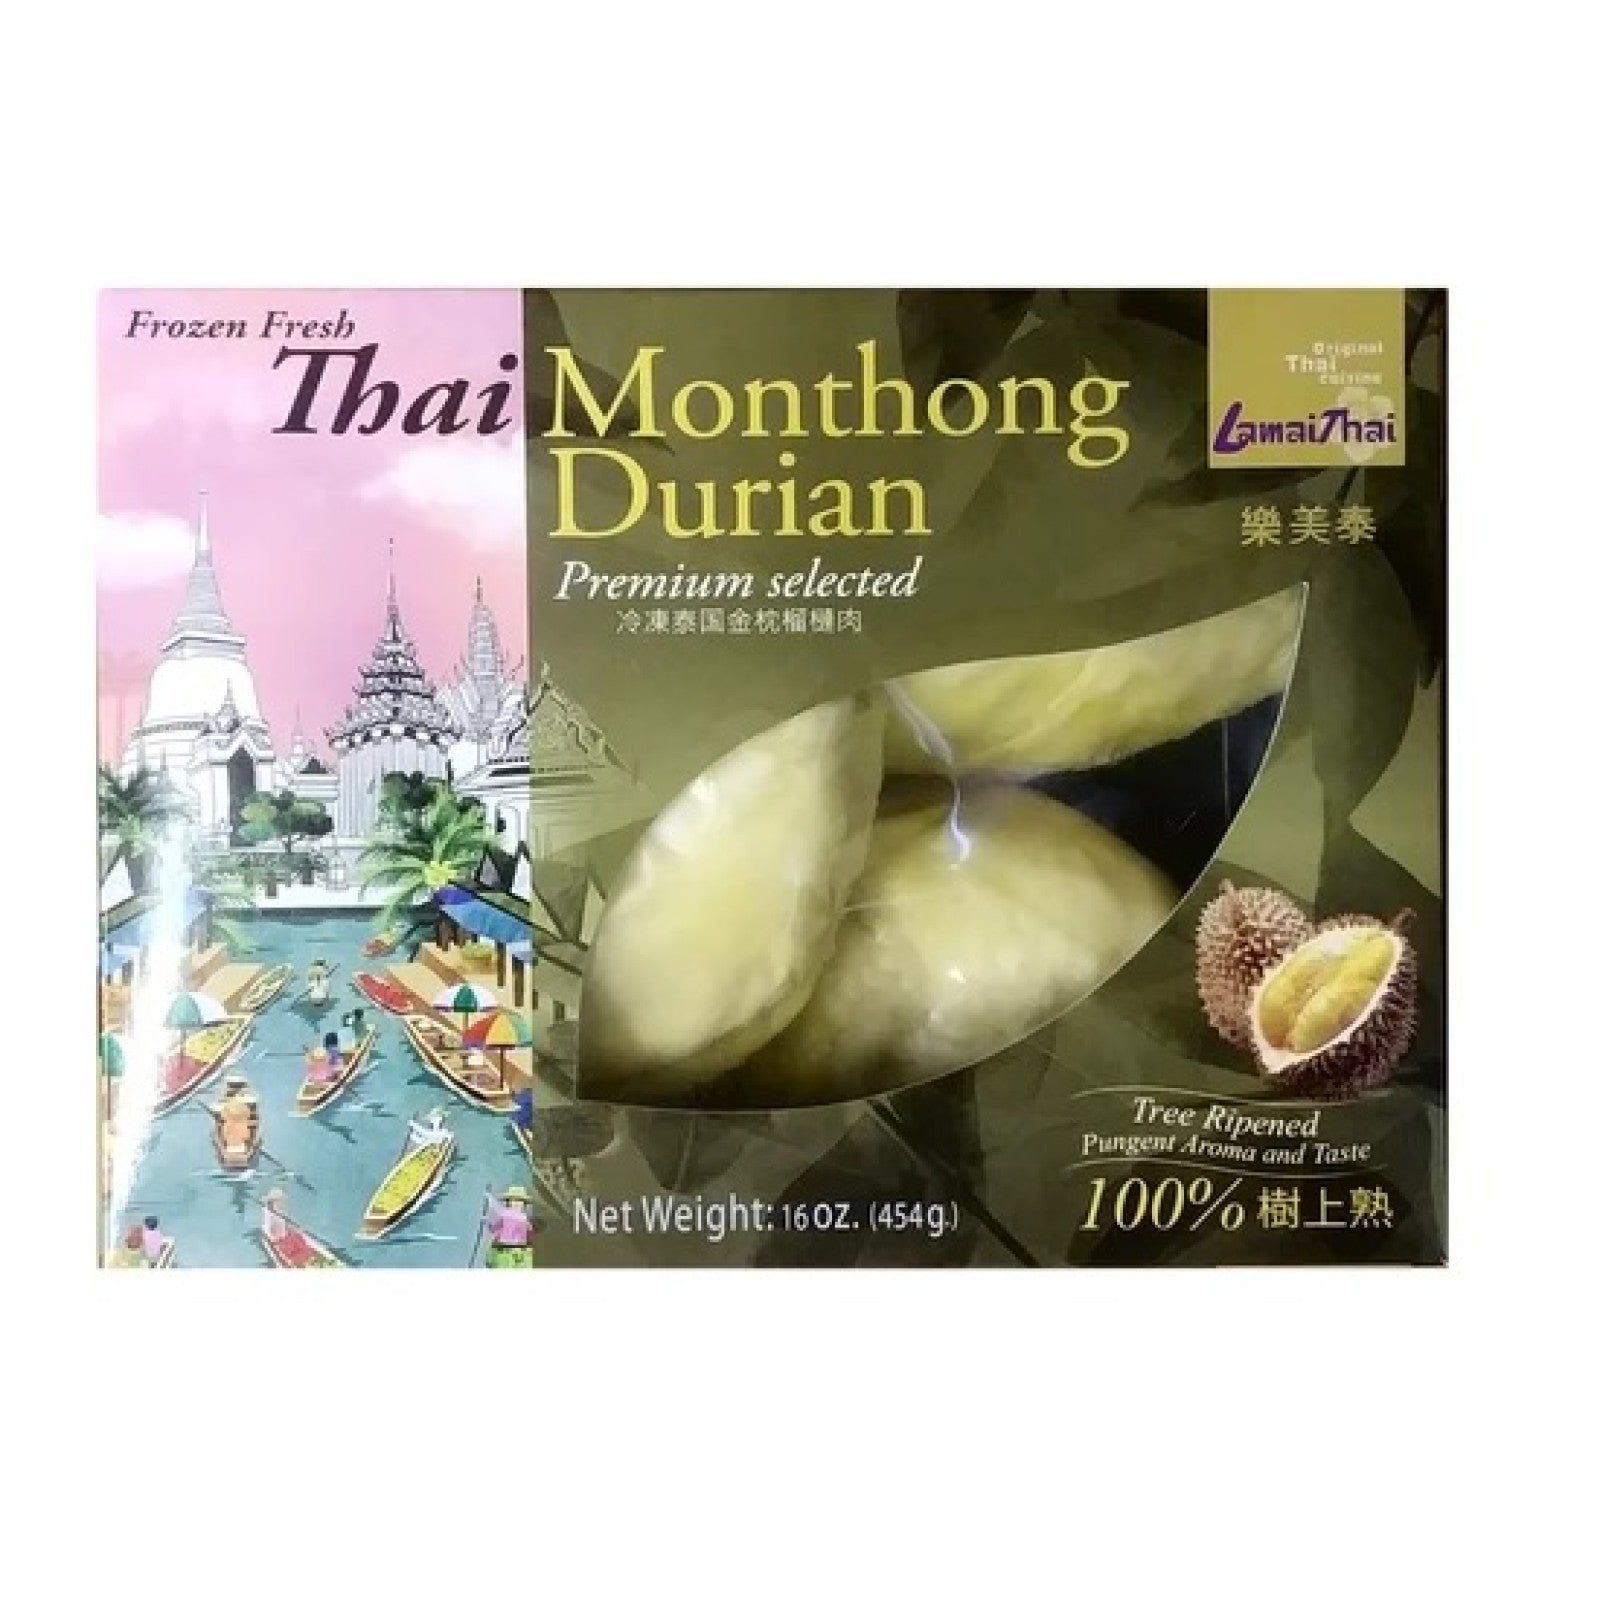 Fresh Frozen Monthong Durian Fruit 454g by Buono Lamai Thai